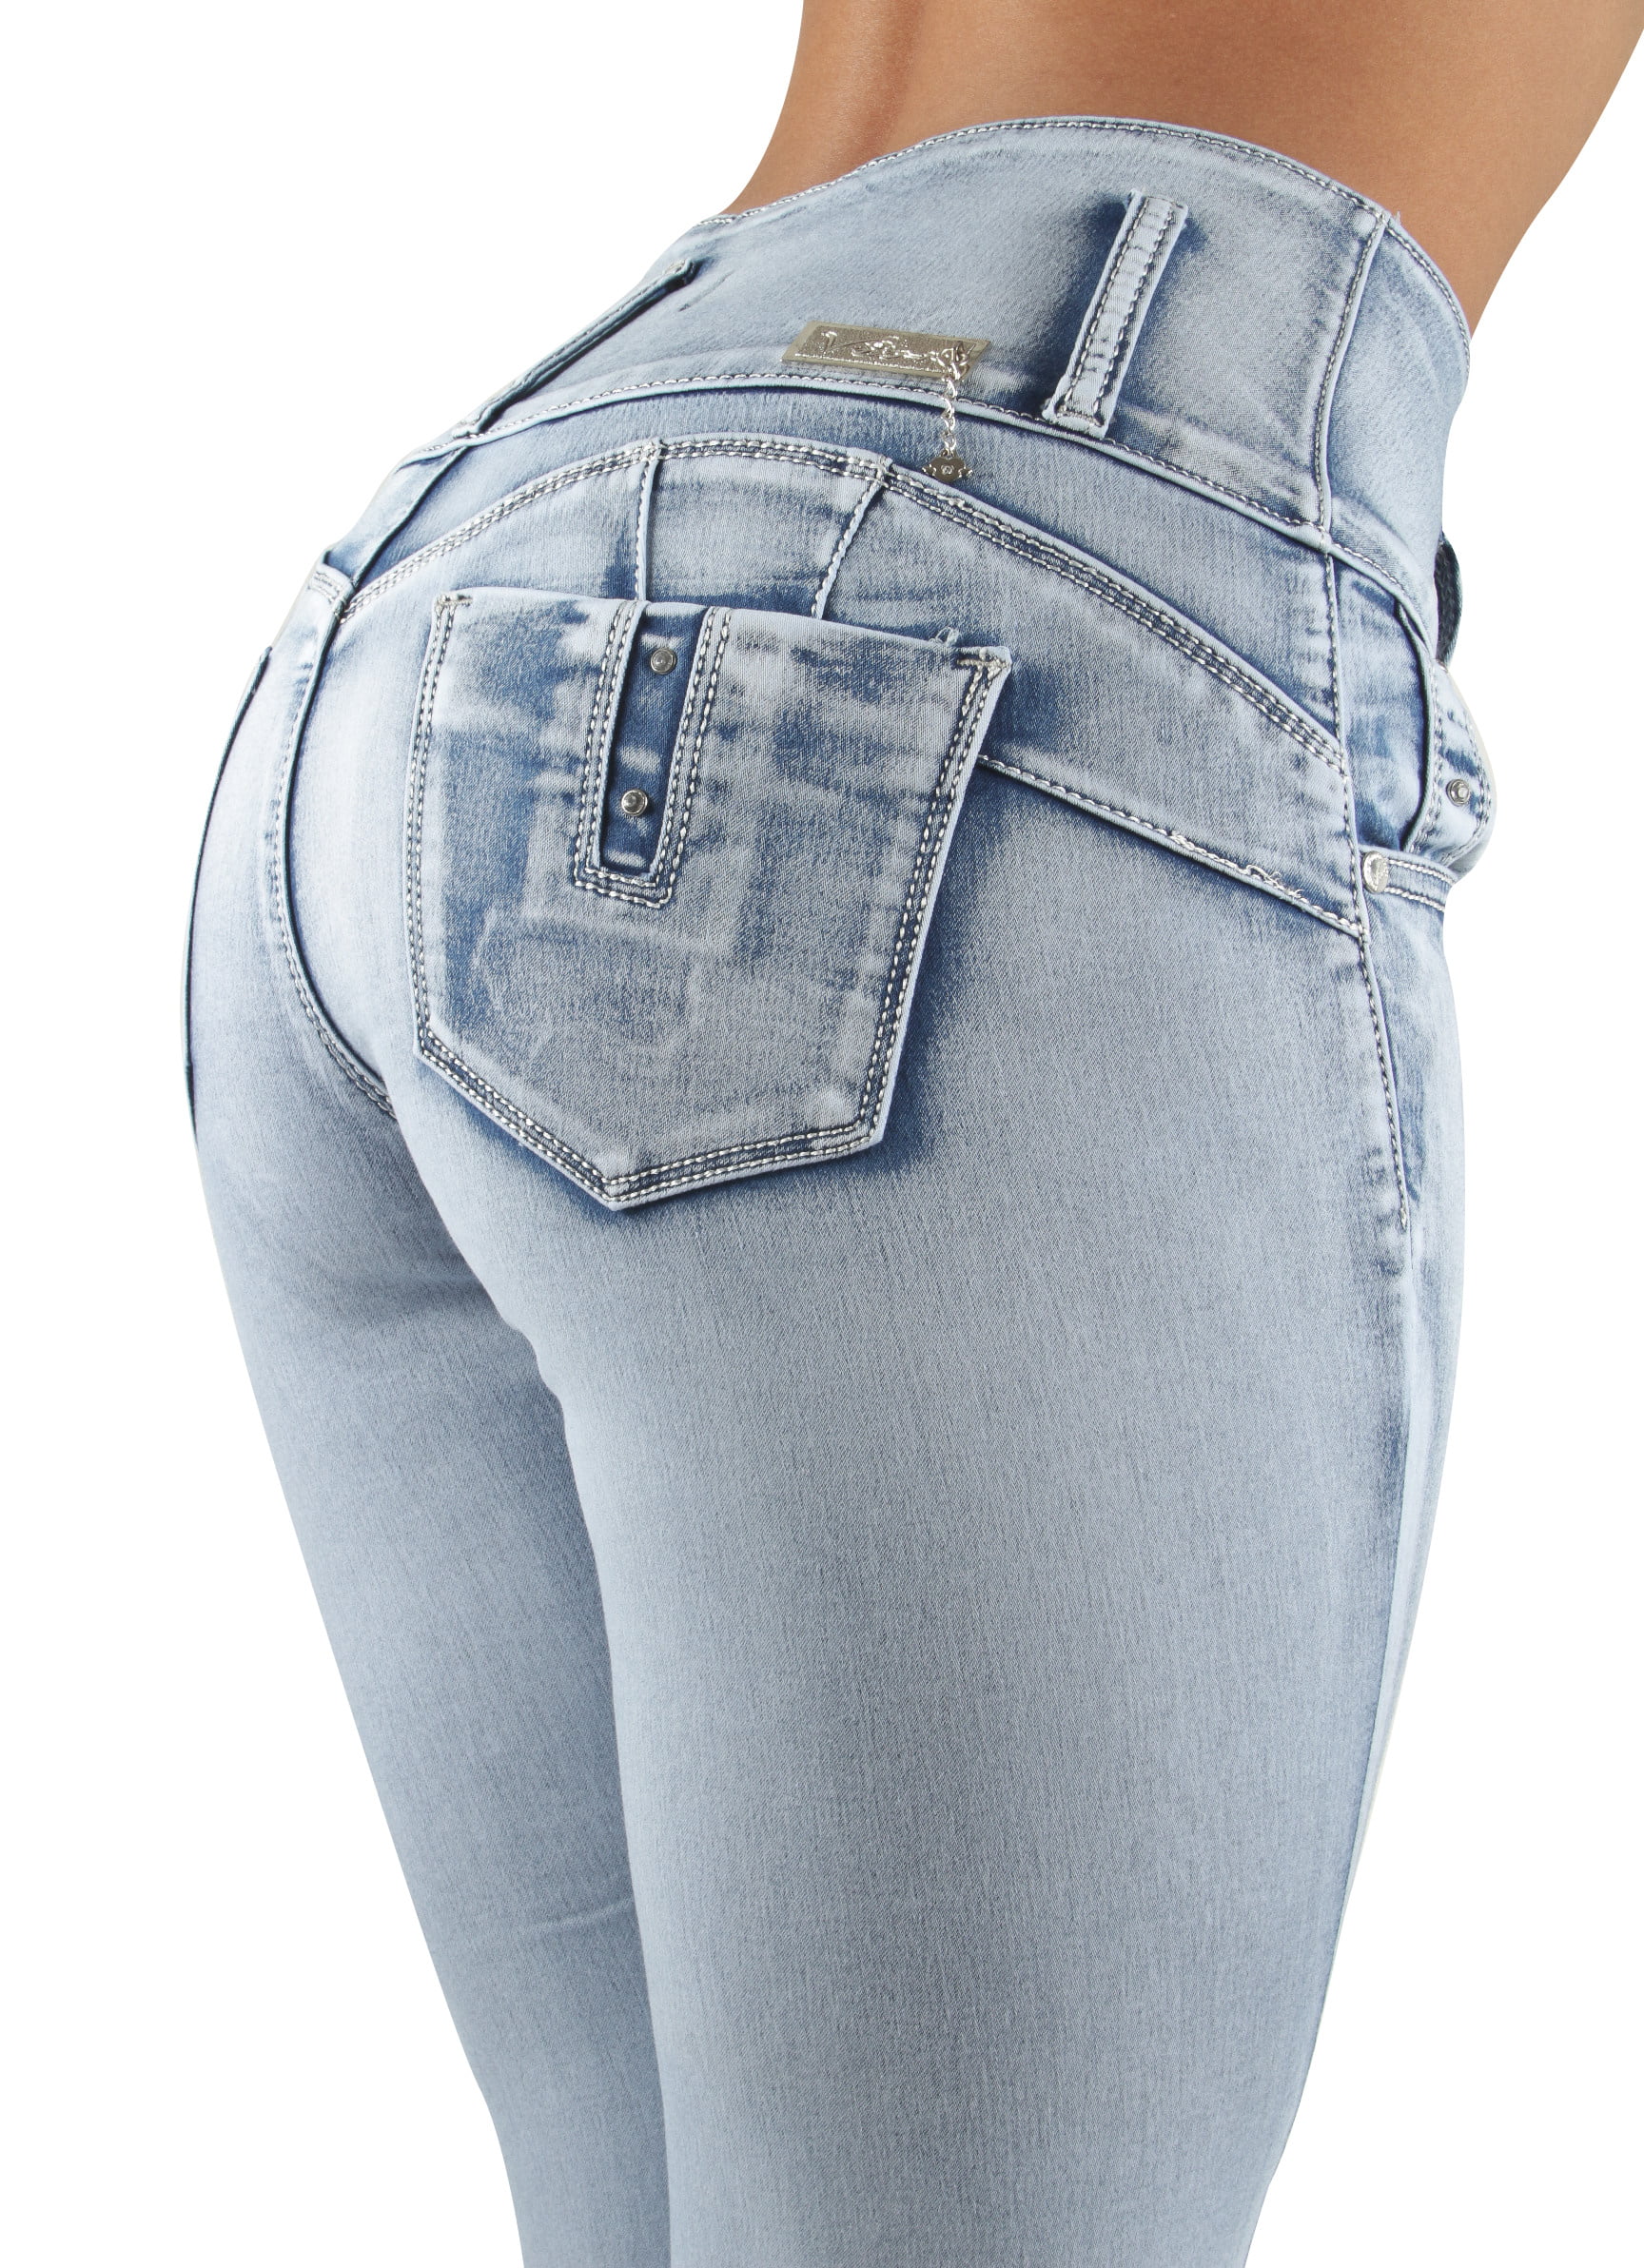 Skinny Jeans Butt Lift High Waist Women's Juniors Colombian Design Push Up 